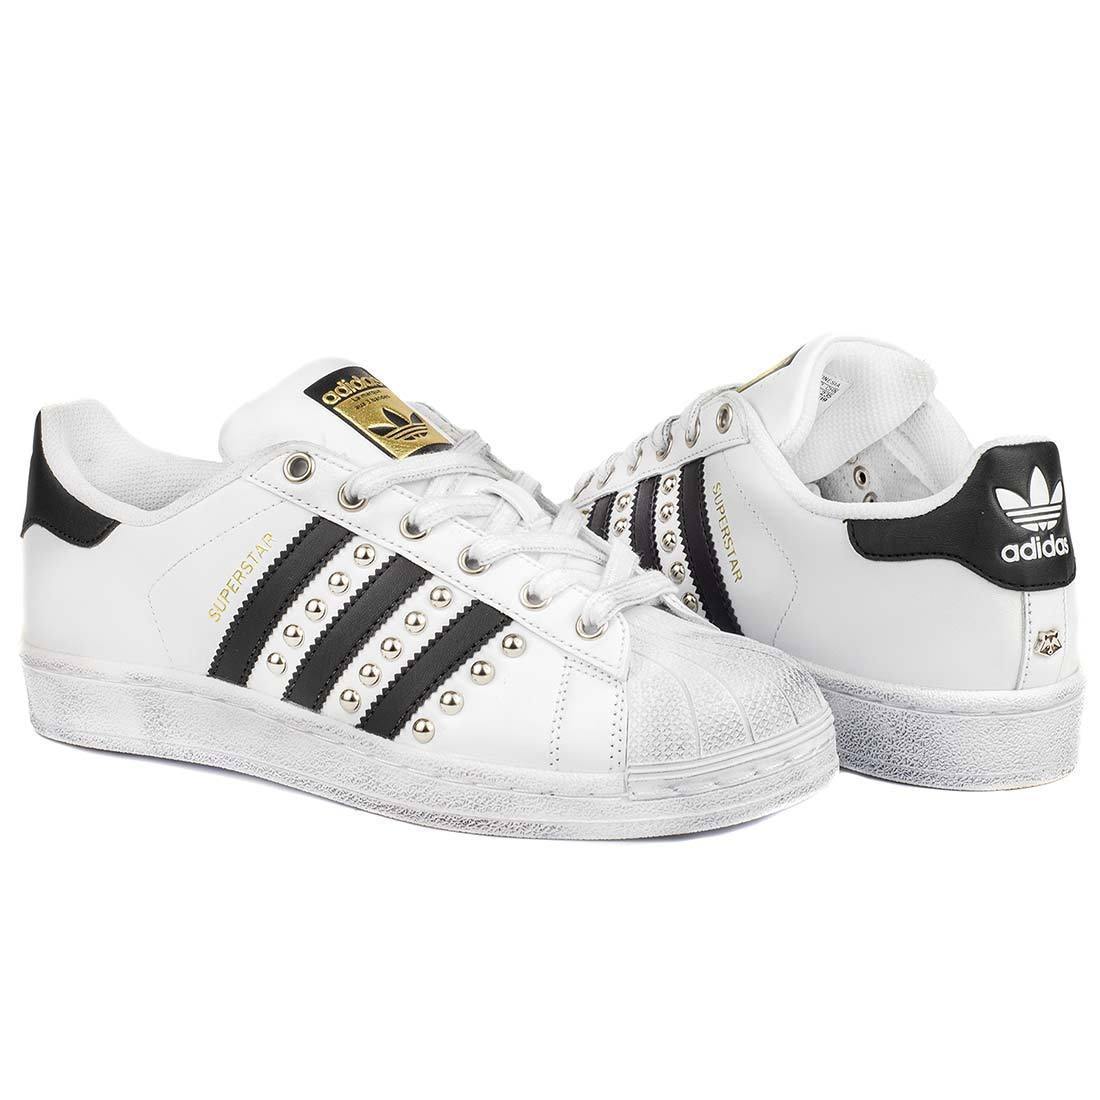 Scarpe Sneakers Adidas Superstar bianche con le strisce nere personalizzate e borchiate